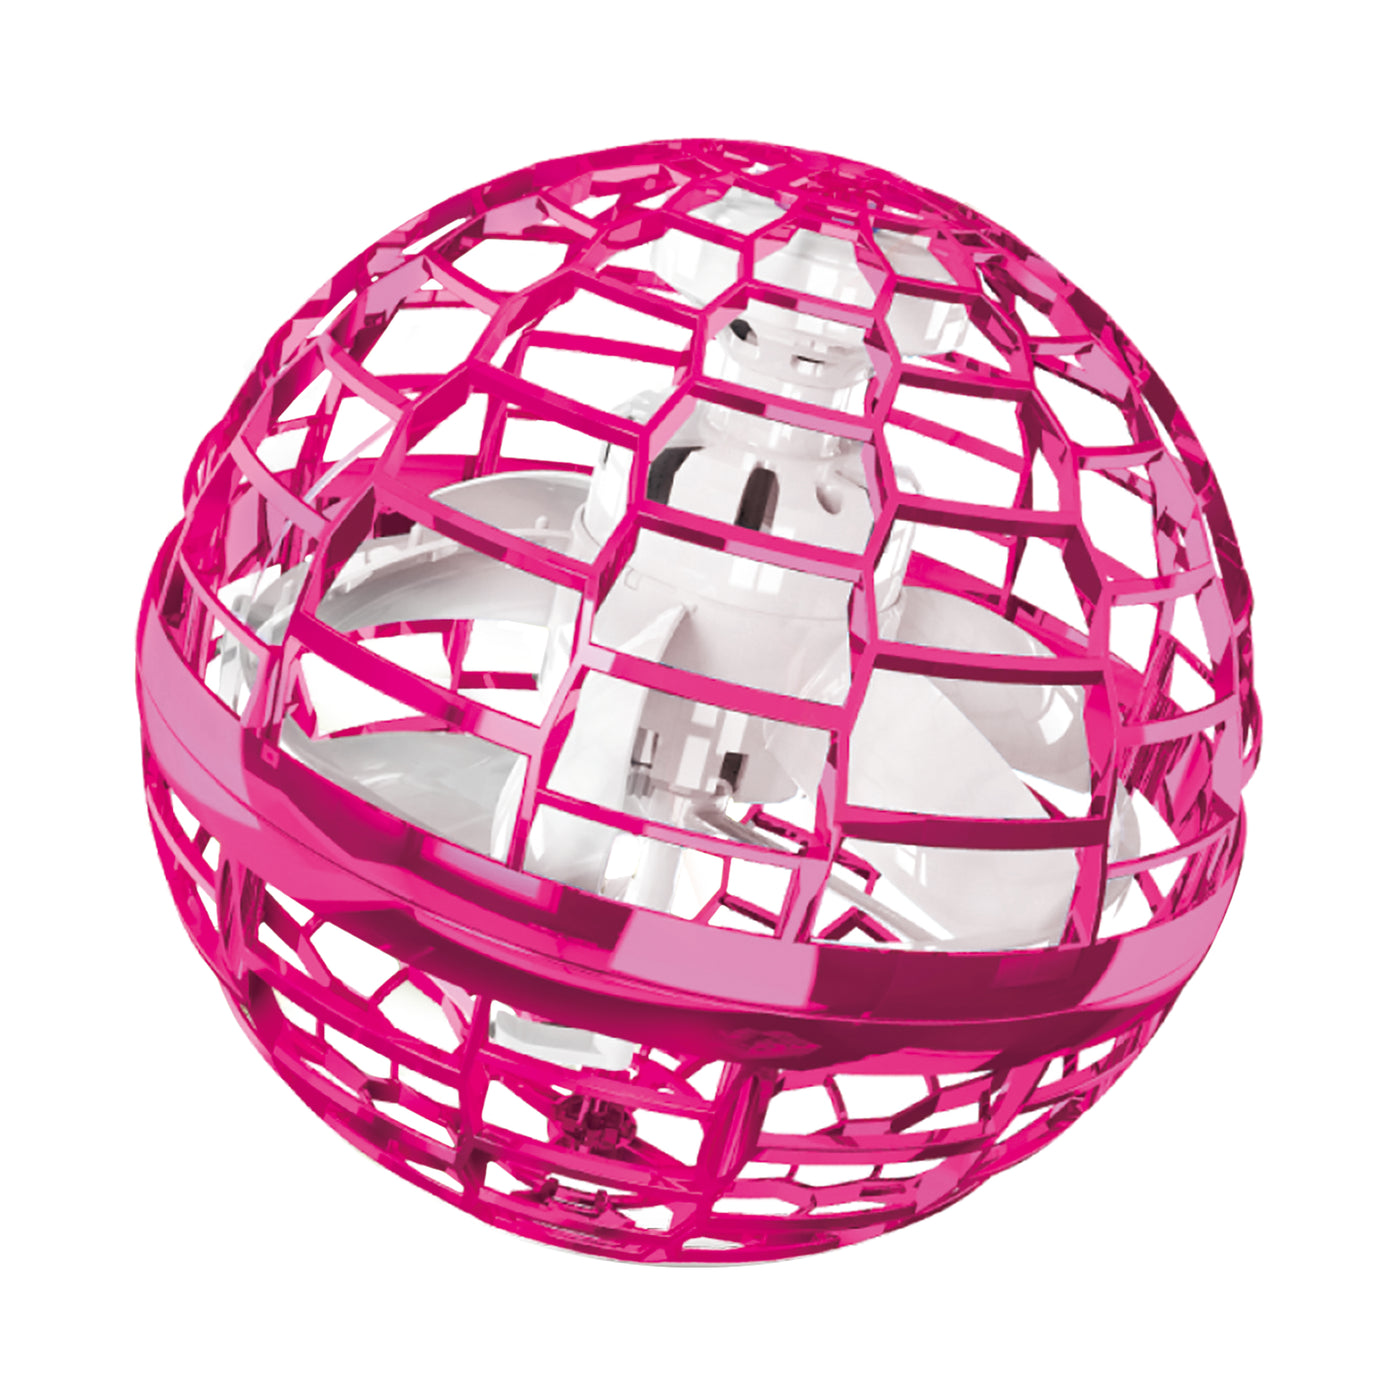 LENCO - FLB-007PK- Flying lighting ball - Pink